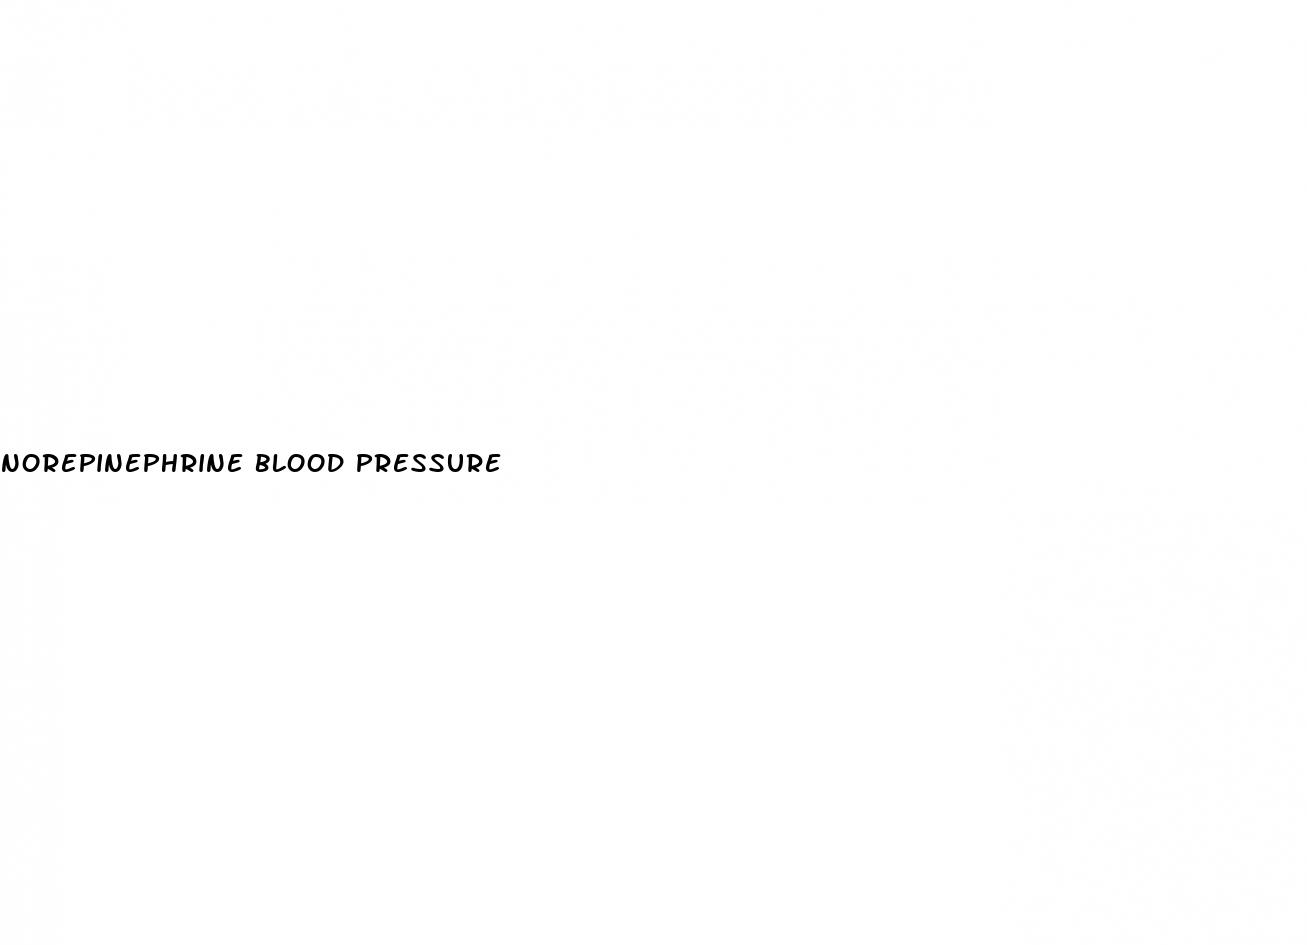 norepinephrine blood pressure